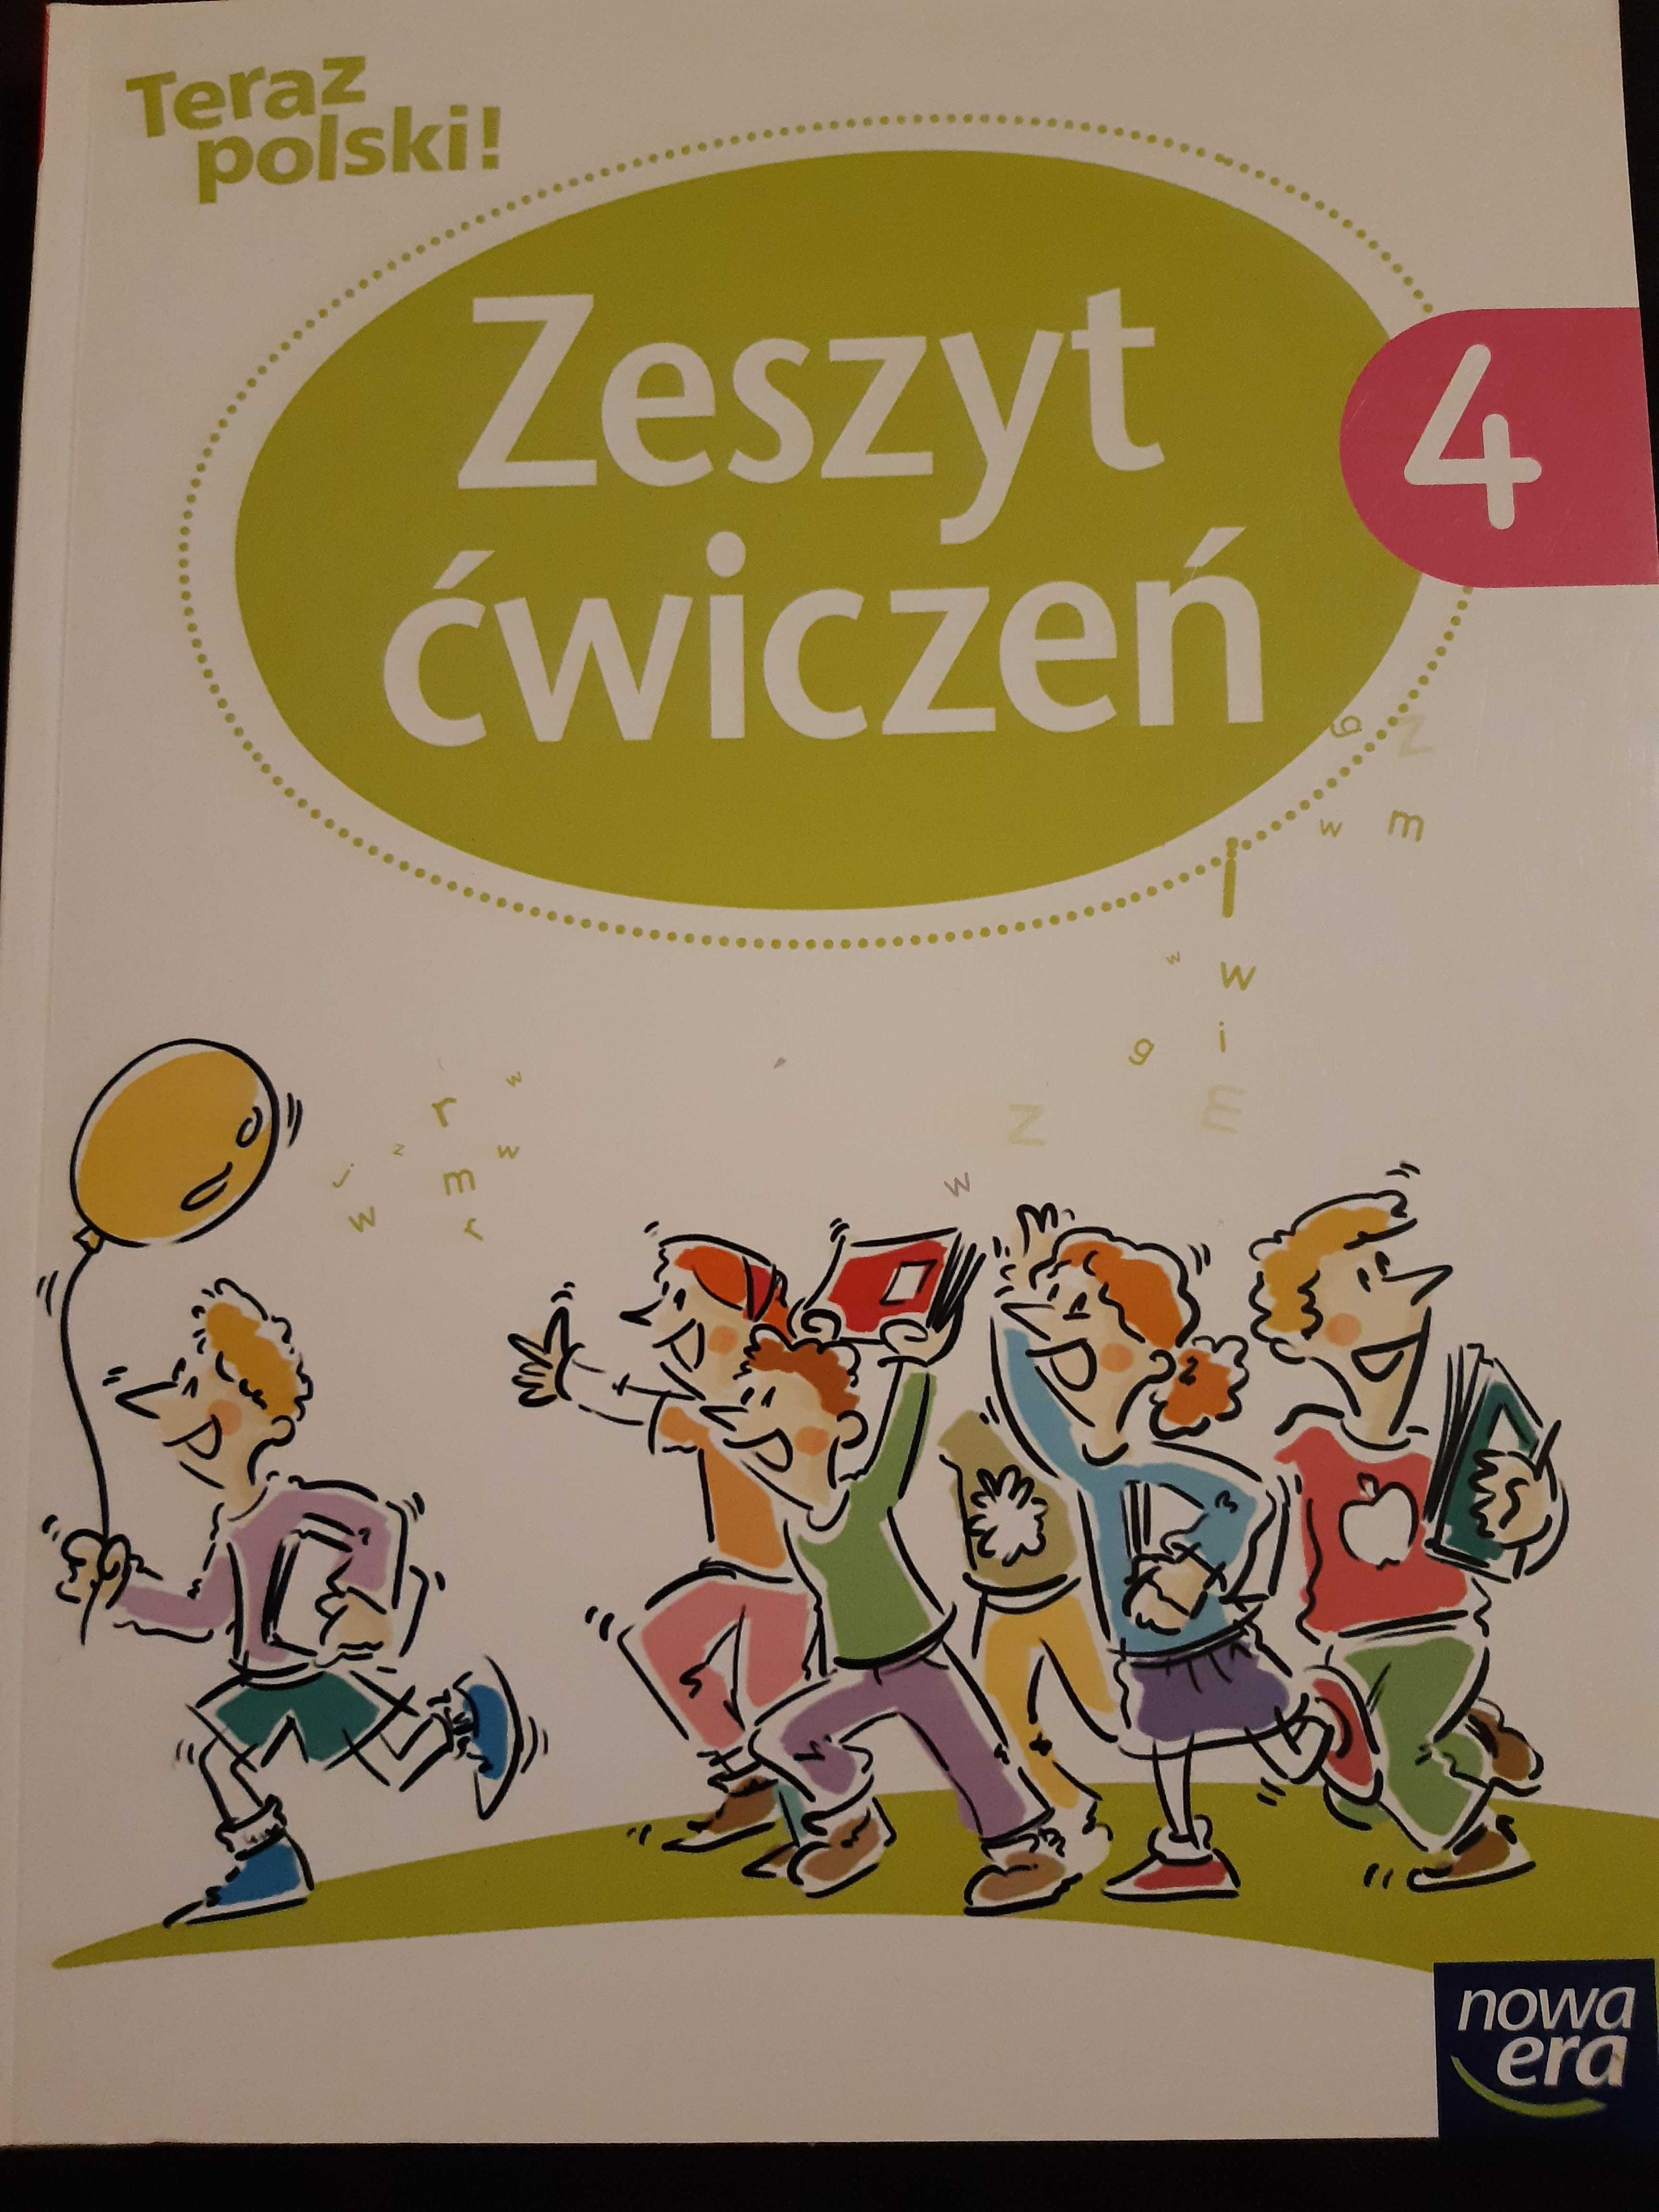 Teraz polski! Klasa 4 Zeszyt ćwiczeń do języka polskiego